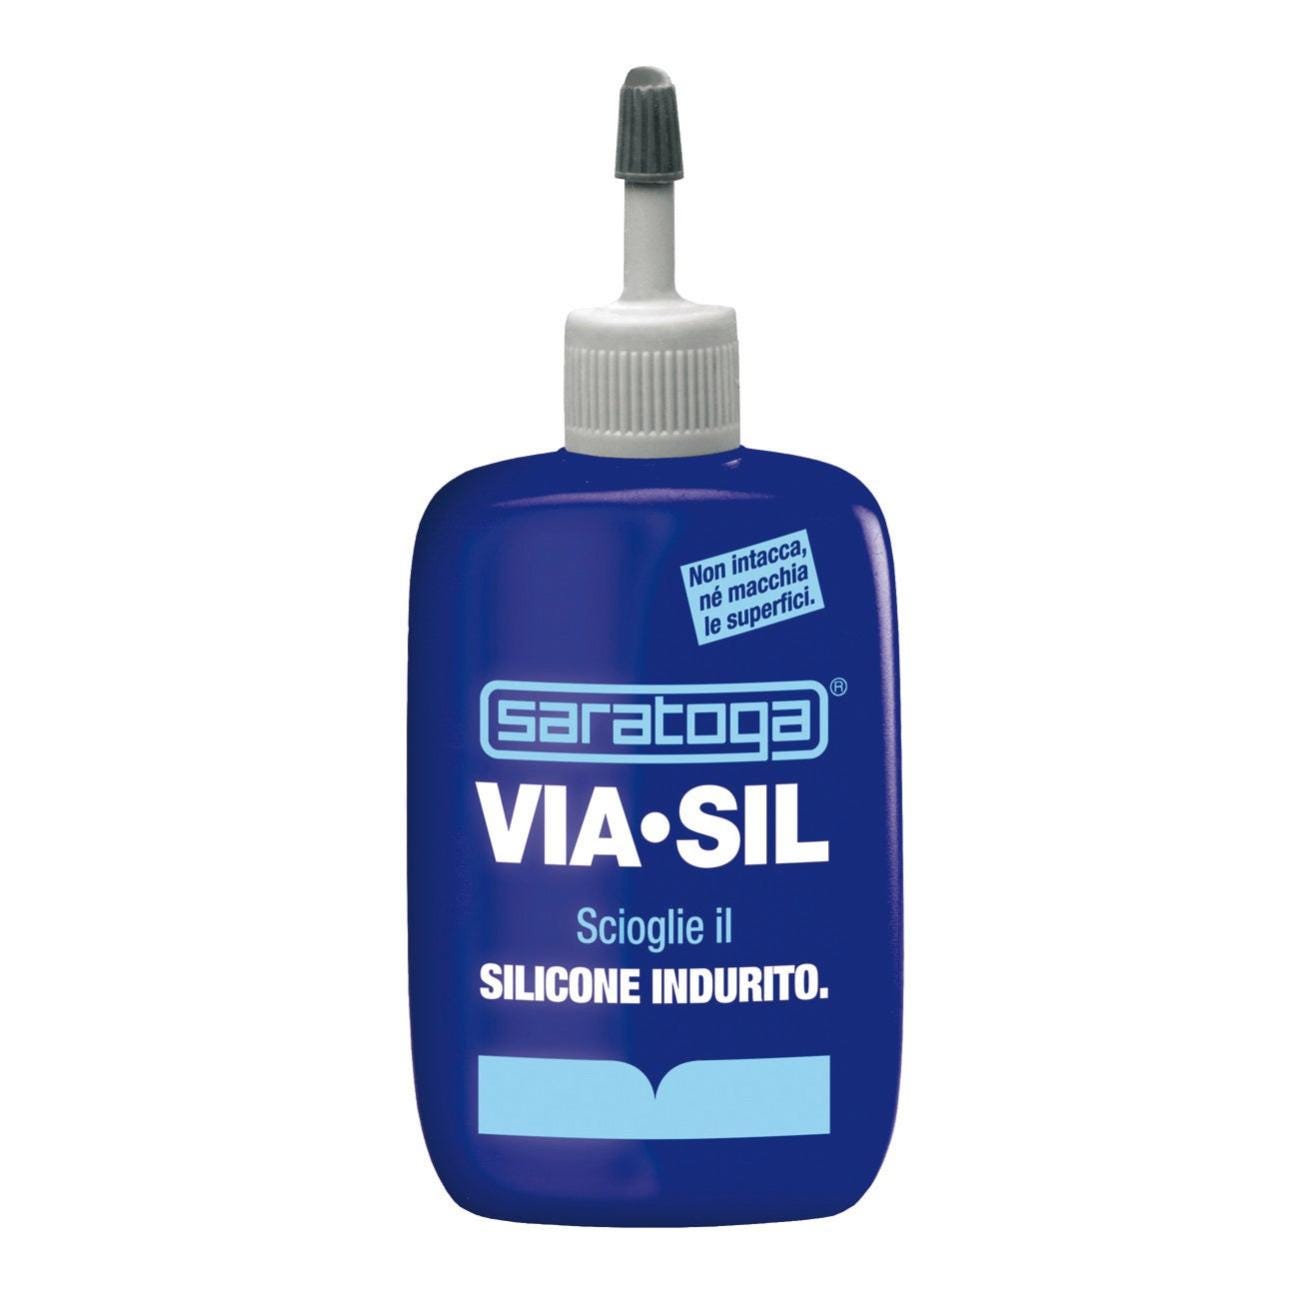 Rimuovi silicone Viasil per eliminare il prodotto indurito